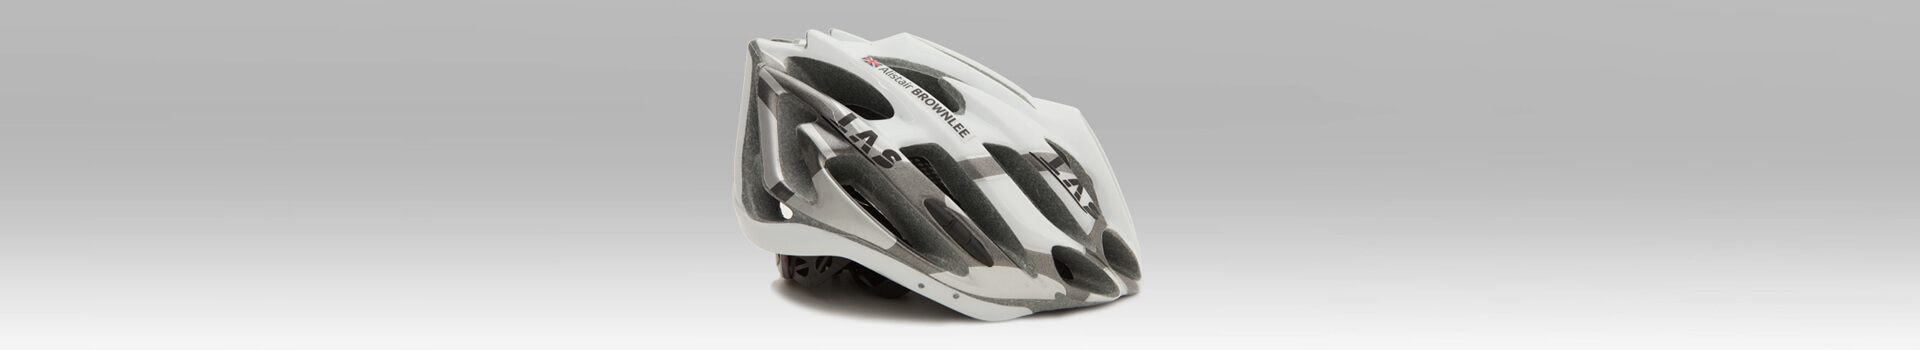 Autocolantes personalizados para capacete de bicicleta